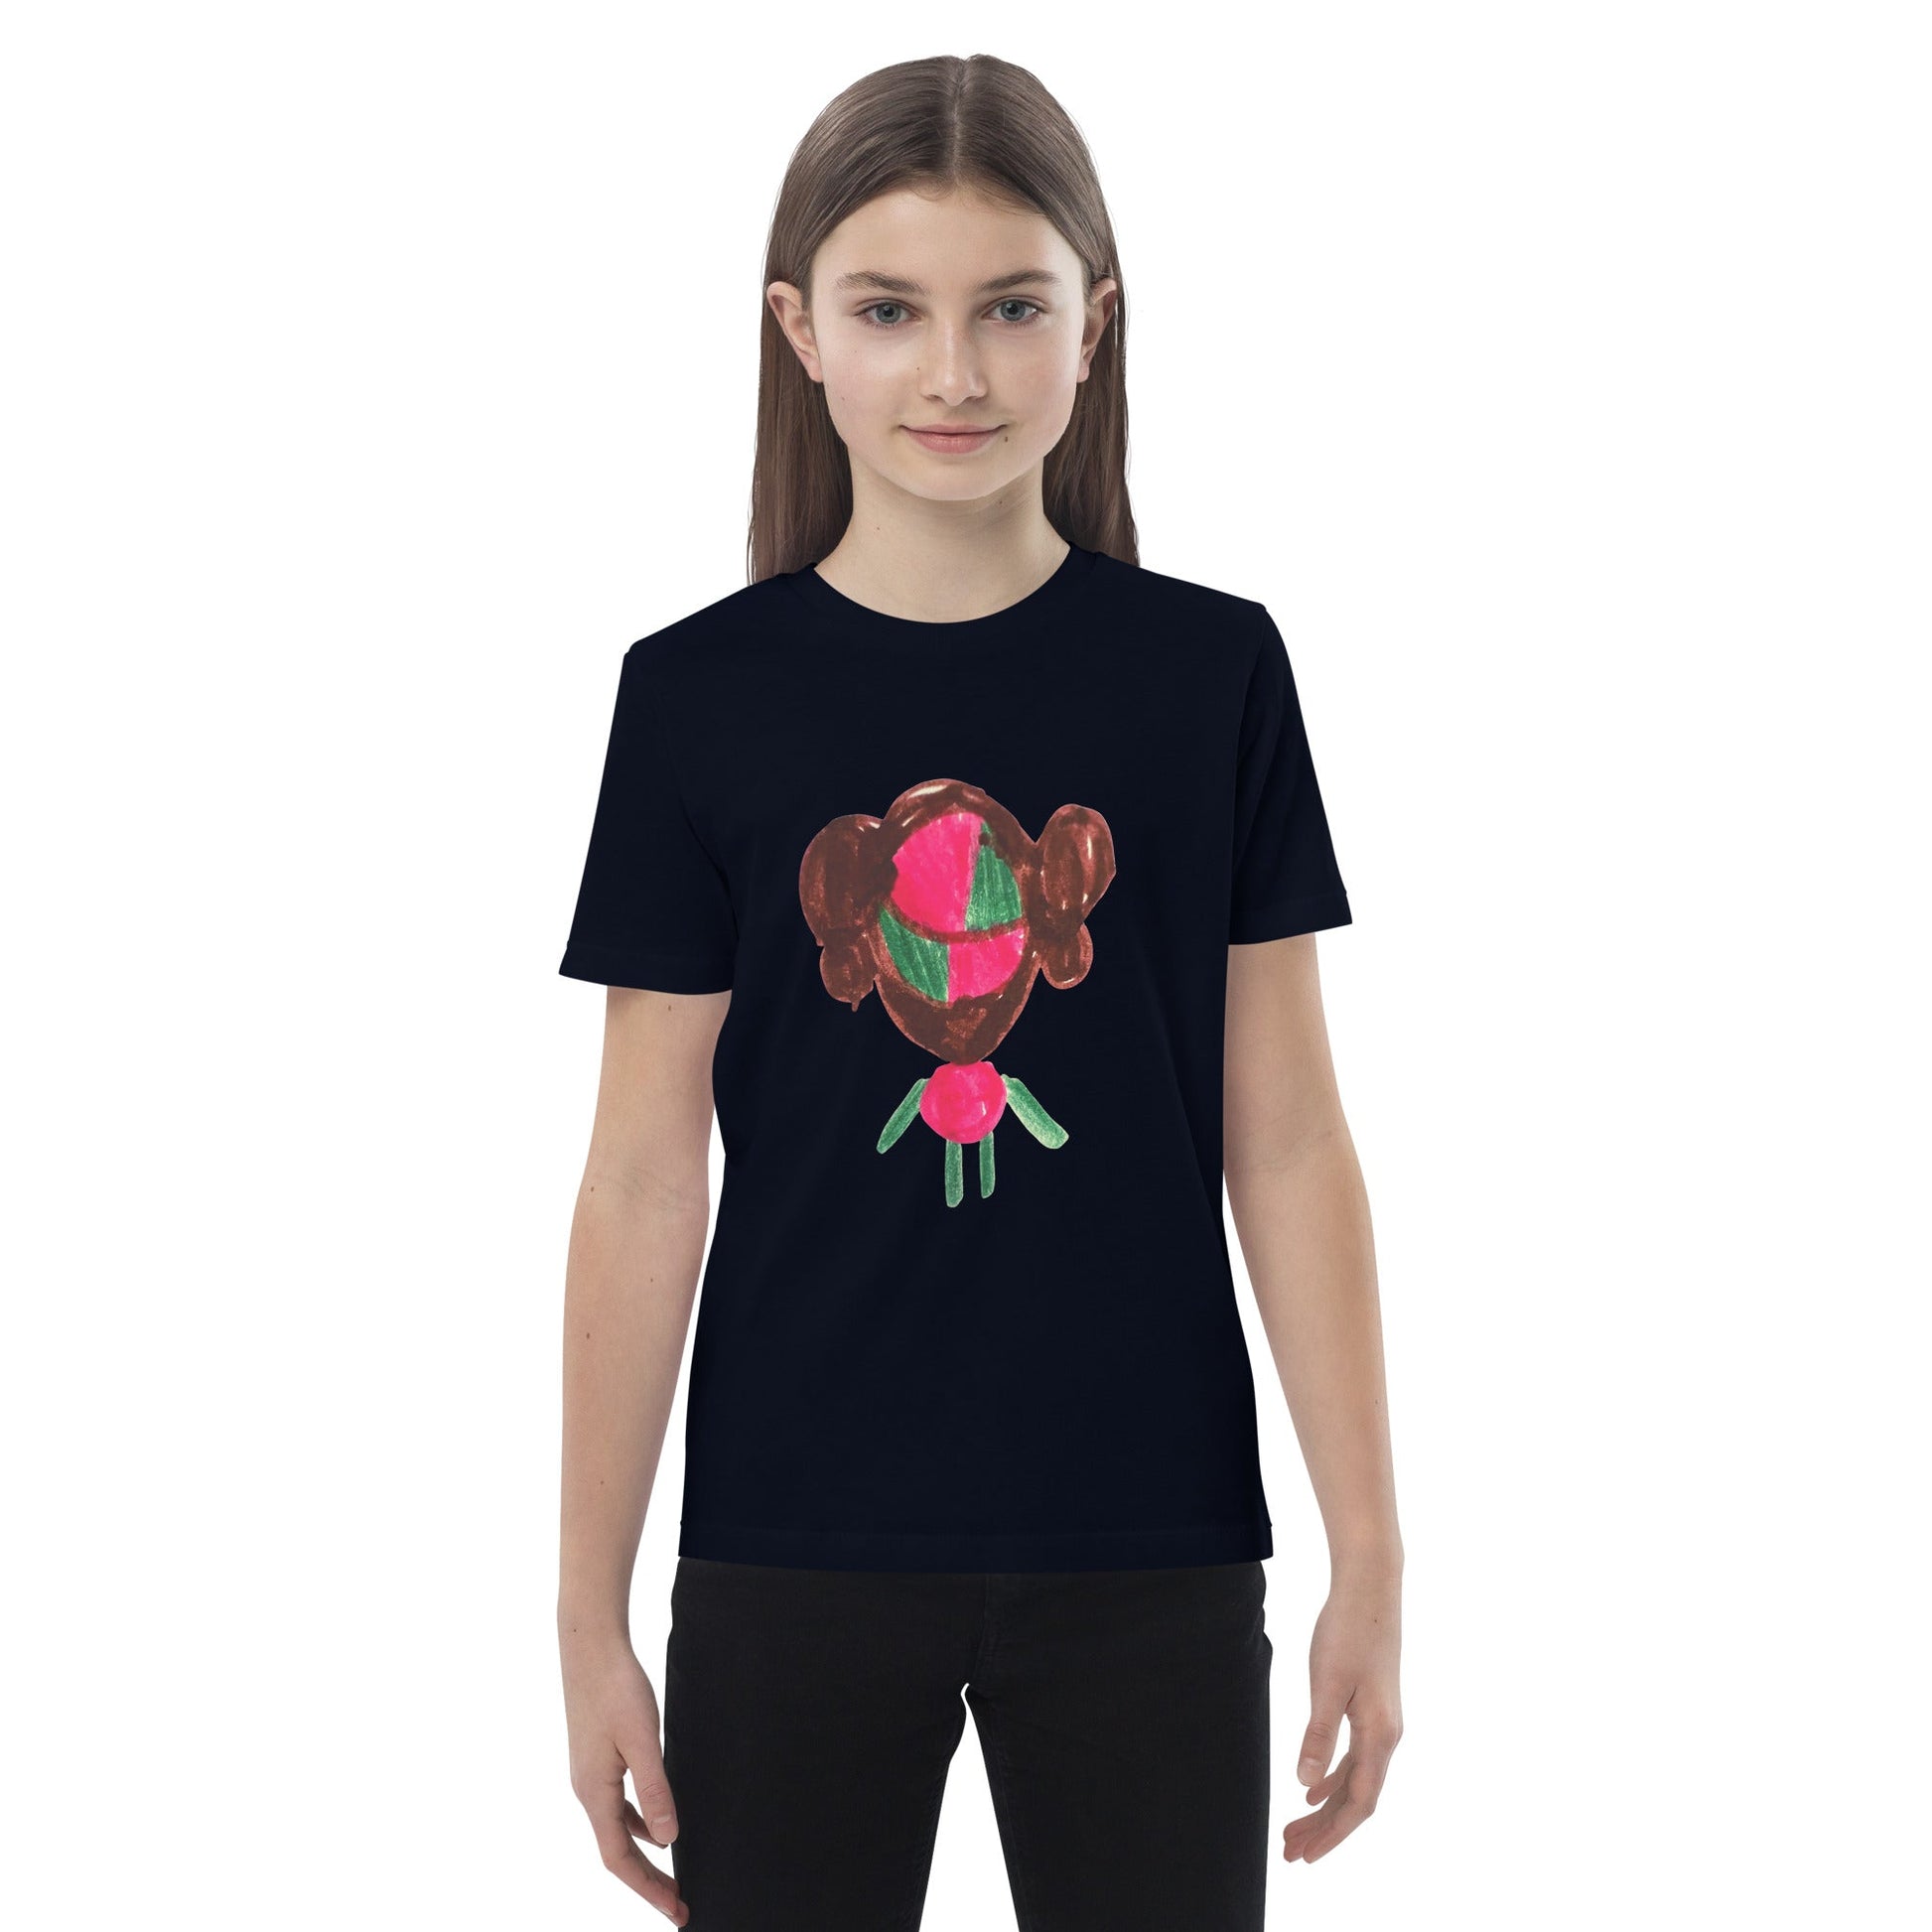 THING ORGANIC COTTON KIDS T-SHIRT-Wearable art t-shirt-mysticalcherry